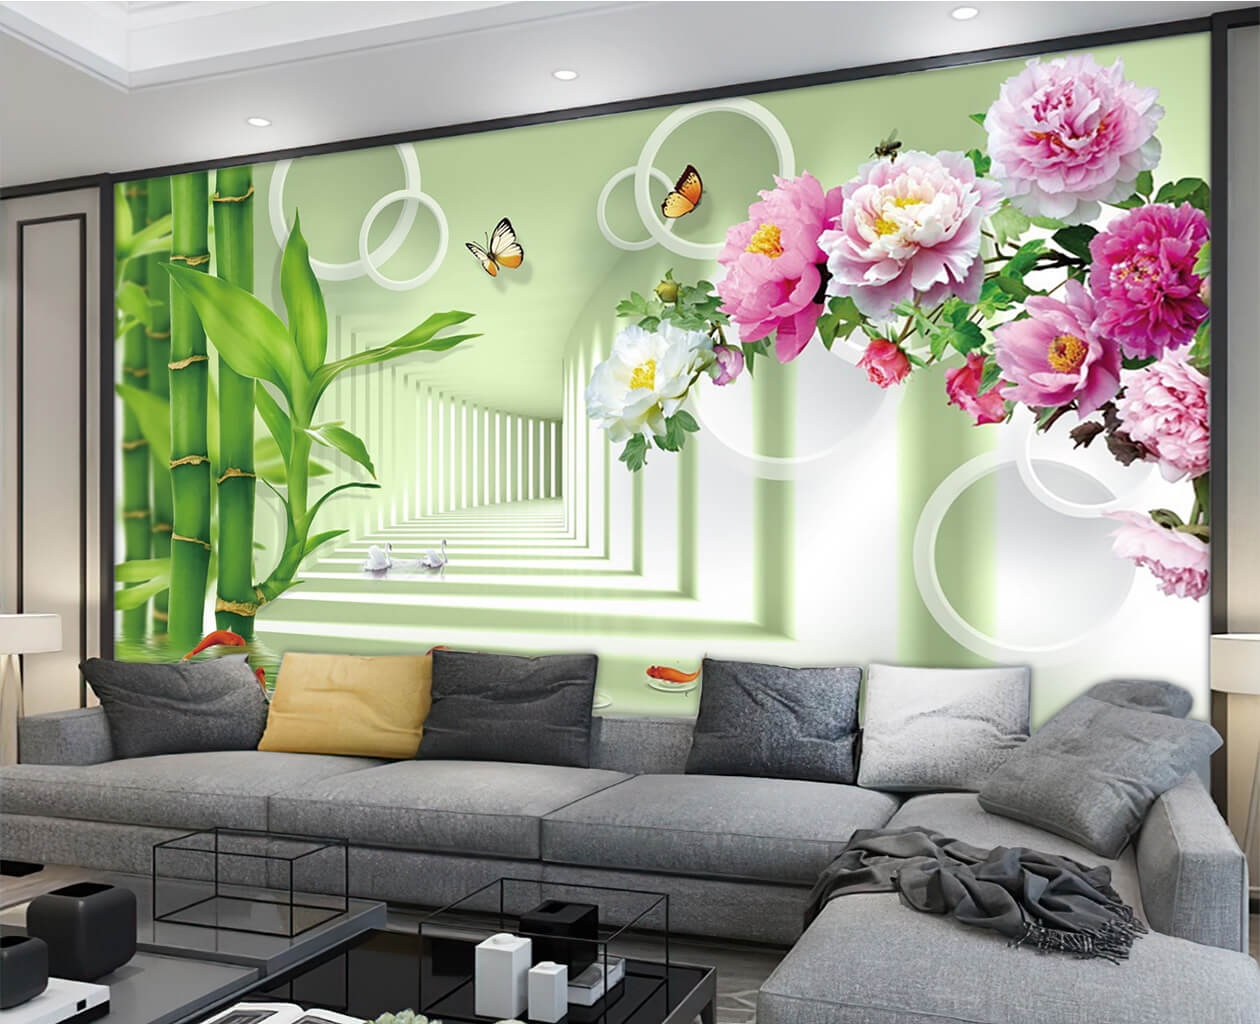 Tranh 3D phòng khách giúp cho không gian căn phòng nhà bạn trở nên sống động hơn